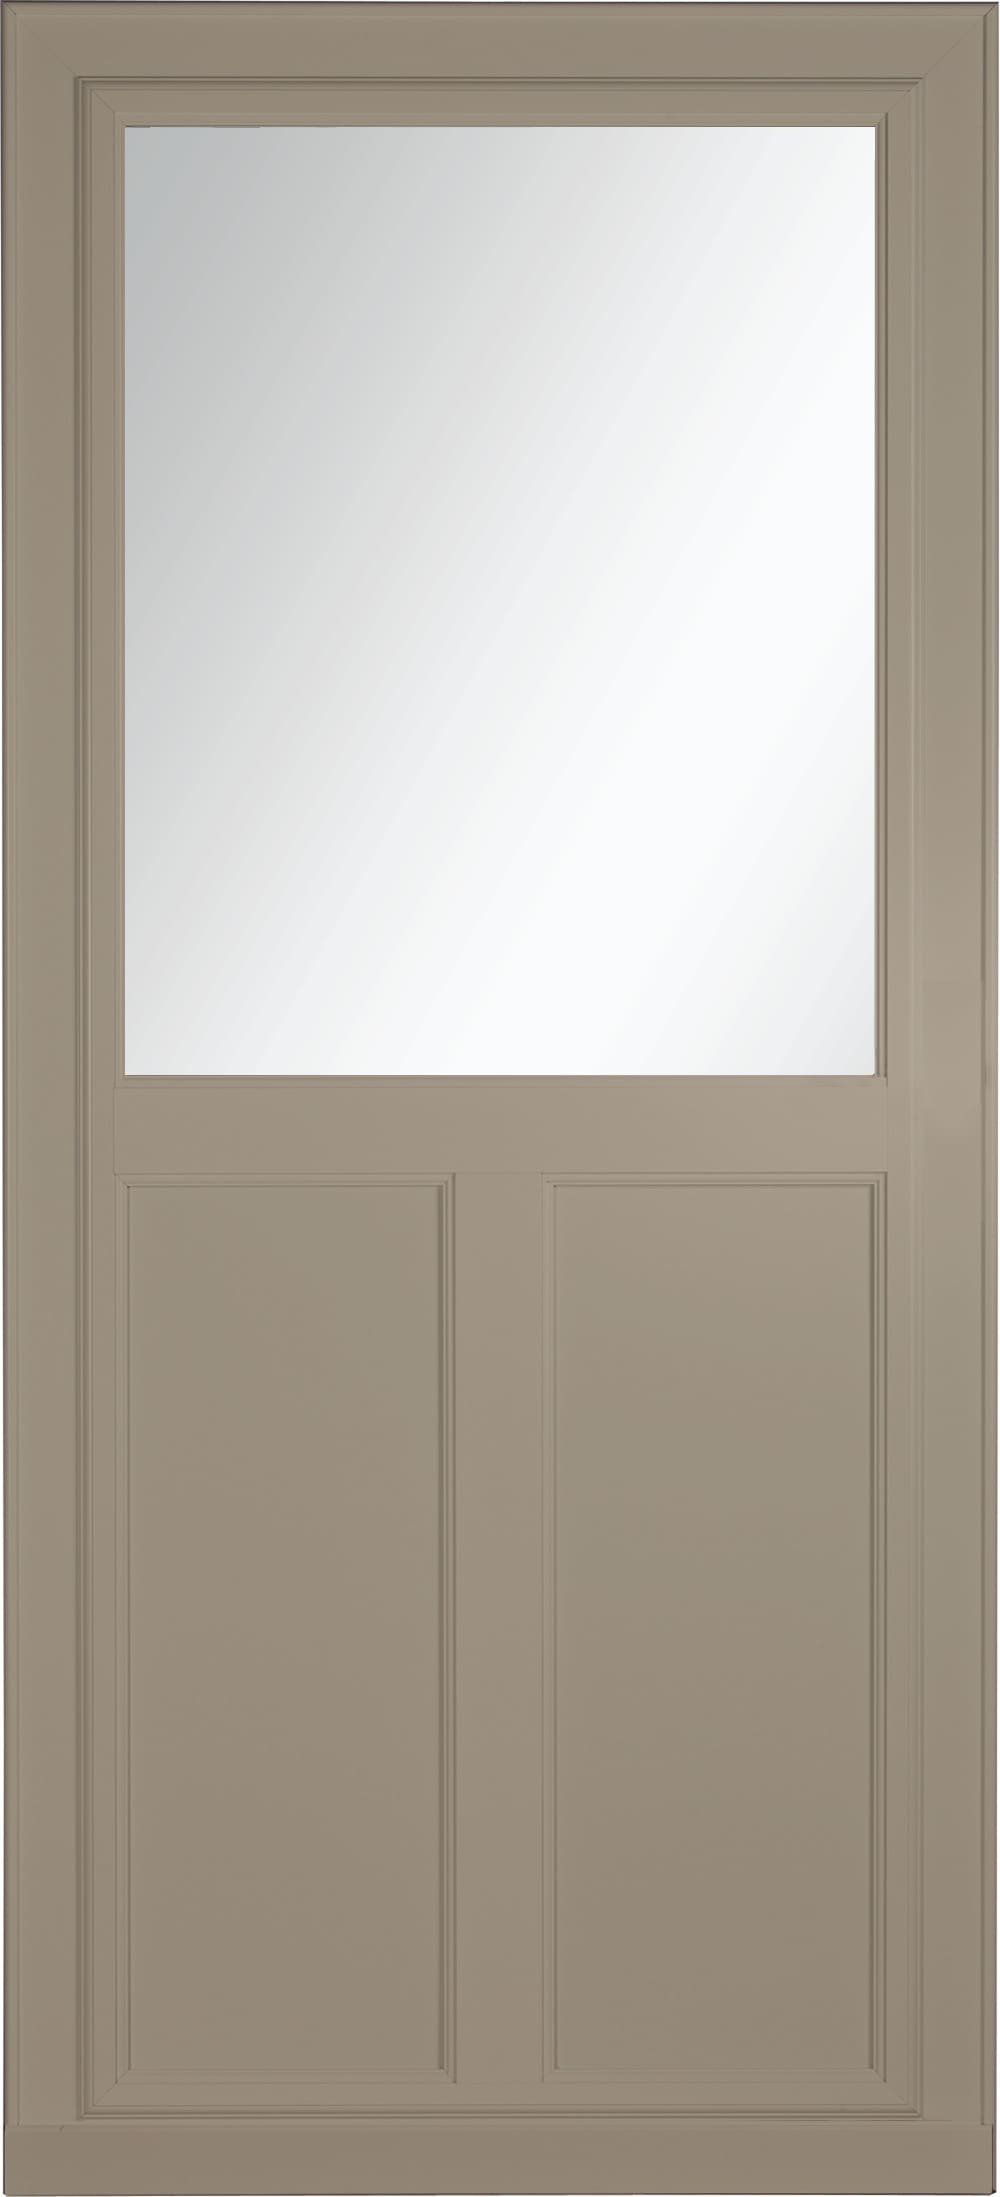 Tradewinds Selection 36-in x 81-in Sandstone High-view Retractable Screen Aluminum Storm Door in Brown | - LARSON 14608092